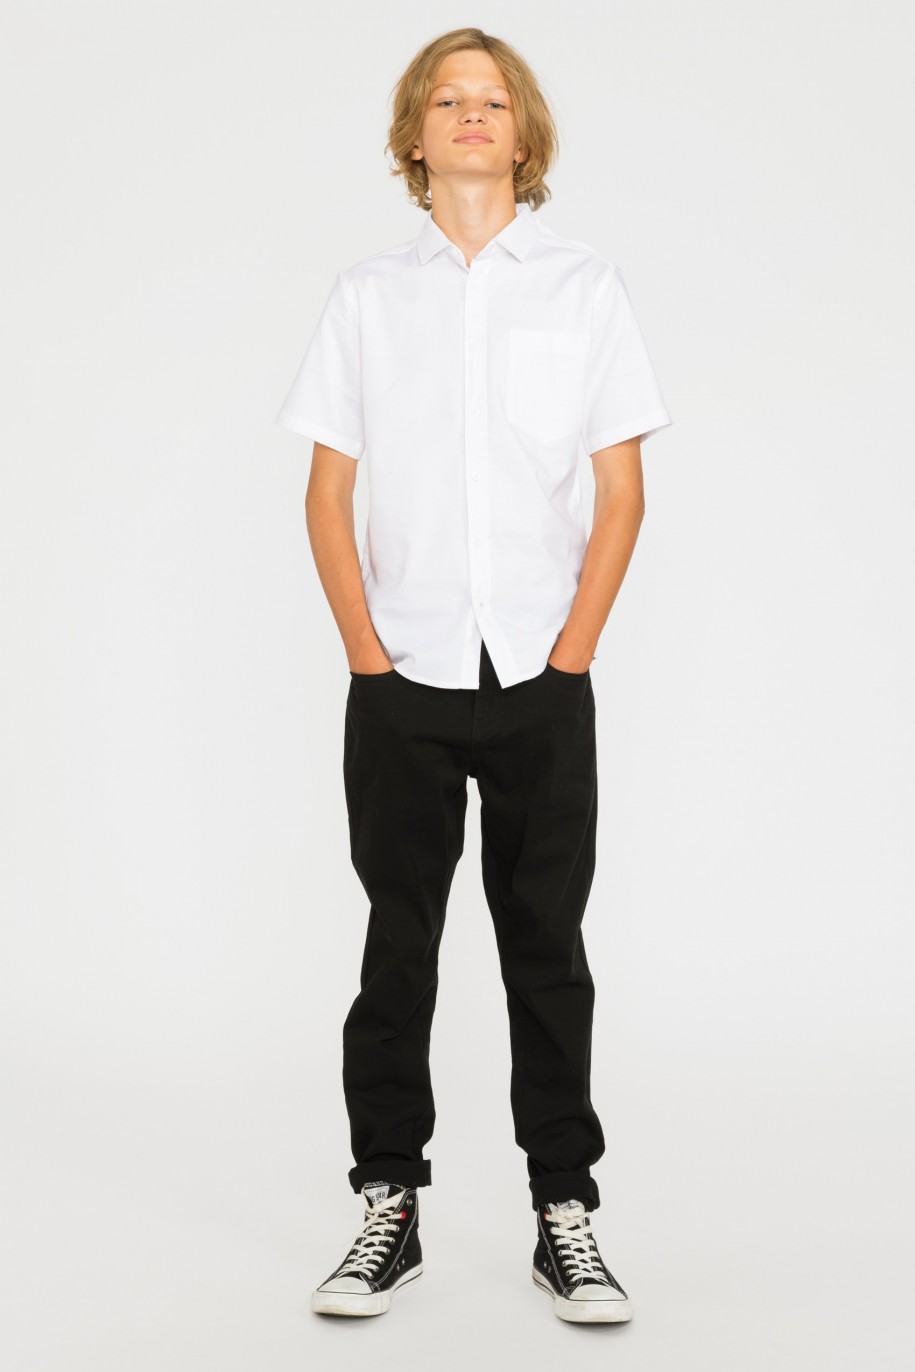 Biała klasyczna koszula z krótkim rękawem dla chłopaka - 29272